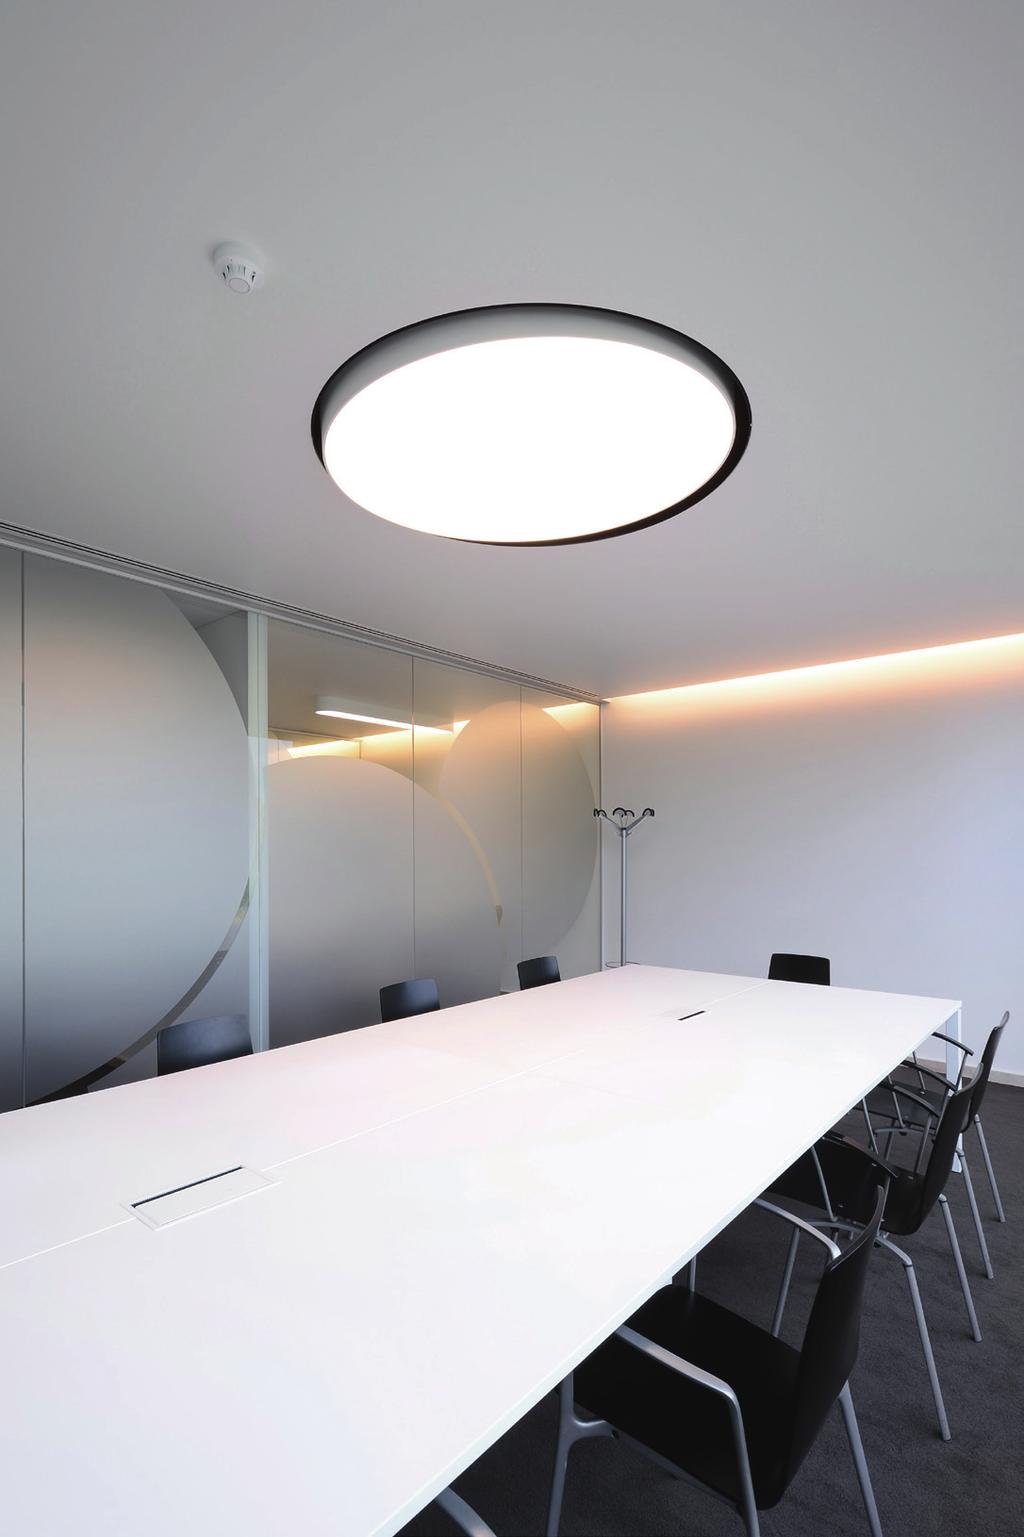 Smartceilings All-in-one ceilings Lighting + Heating + Cooling + Sound + Acoustic Cradle to cradle Hét intelligent plafond afgestemd op de stoutste esthetische en technische dromen.